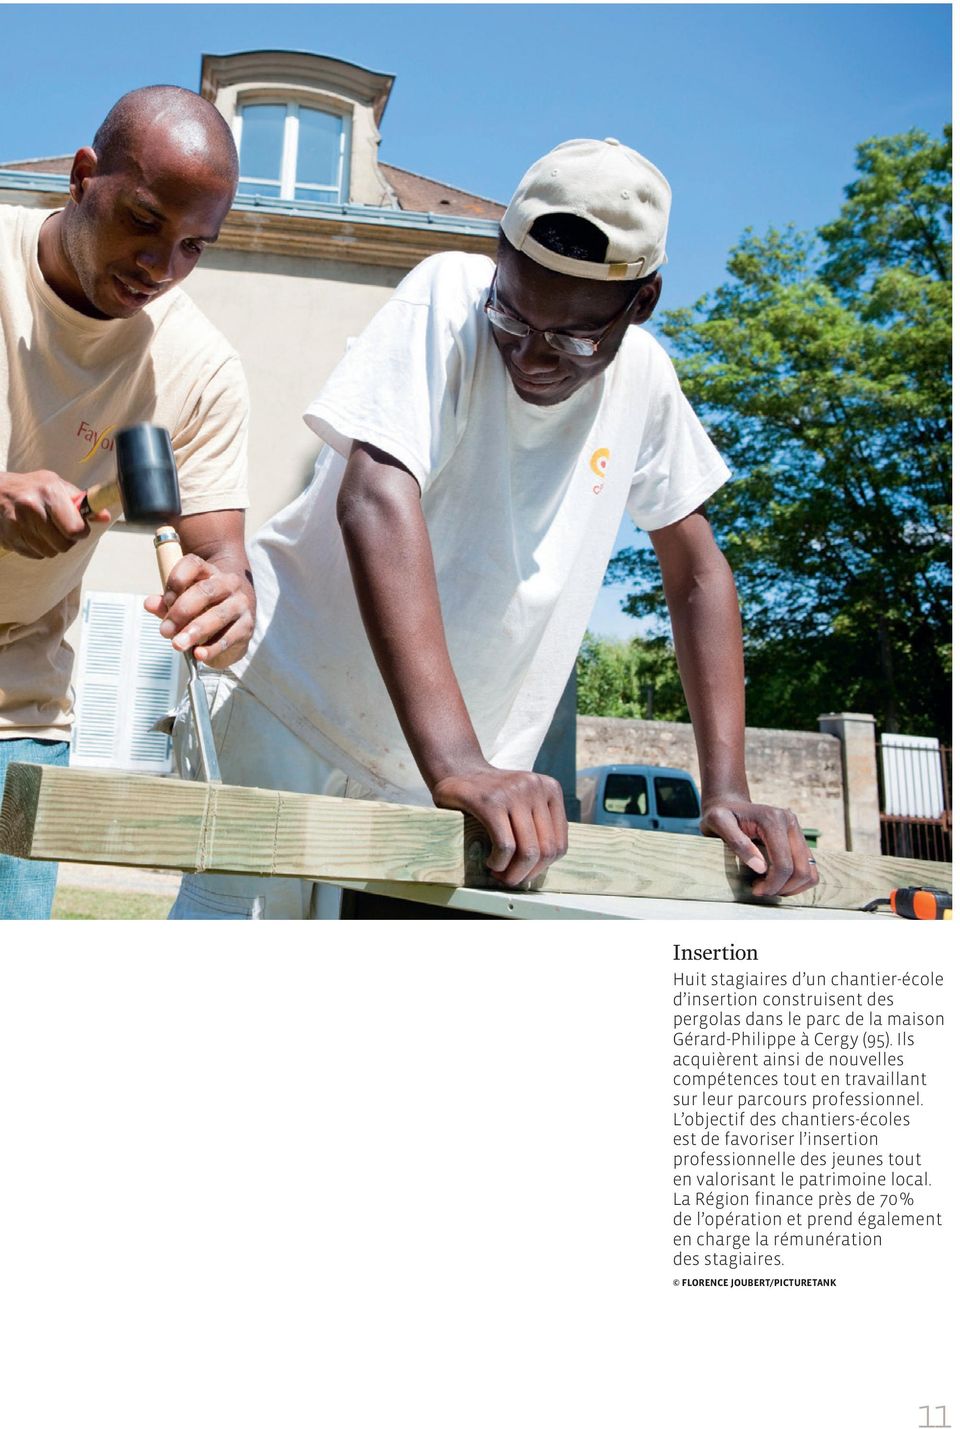 L objectif des chantiers-écoles est de favoriser l insertion professionnelle des jeunes tout en valorisant le patrimoine local.